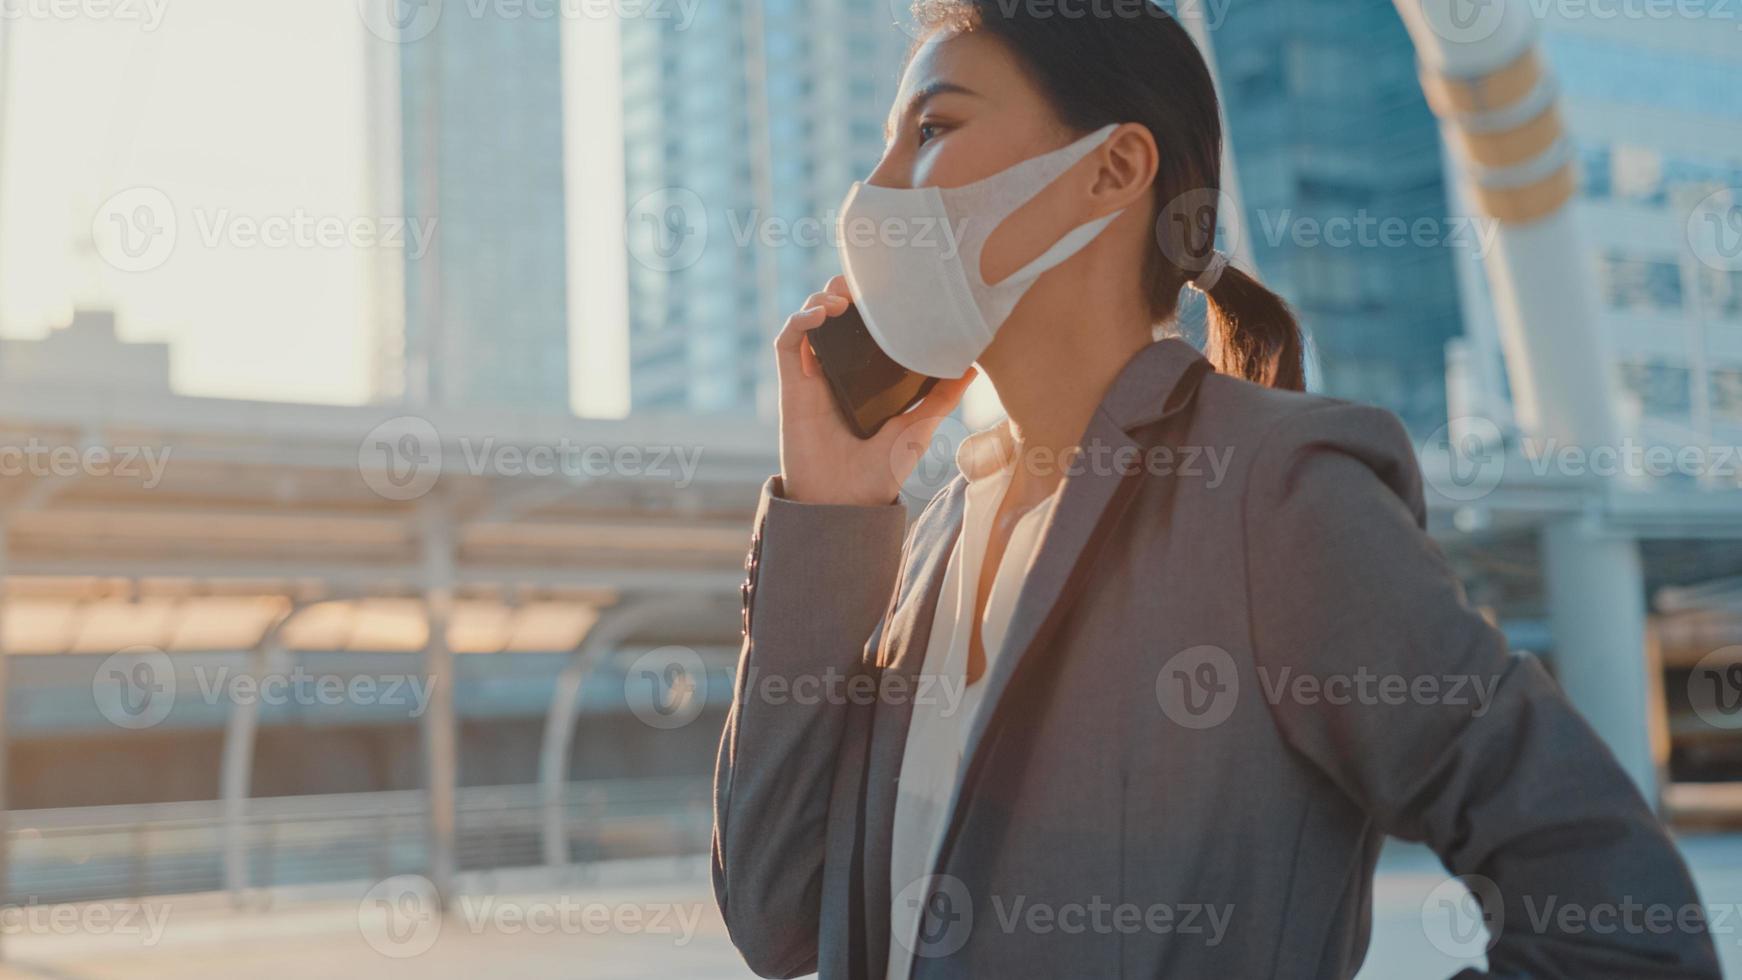 jonge Aziatische zakenvrouw in mode-kantoorkleding draagt een medisch gezichtsmasker, praat via de telefoon terwijl ze alleen buiten in de stedelijke stad loopt. zaken onderweg, sociale afstand om verspreiding van het covid-19-concept te voorkomen. foto